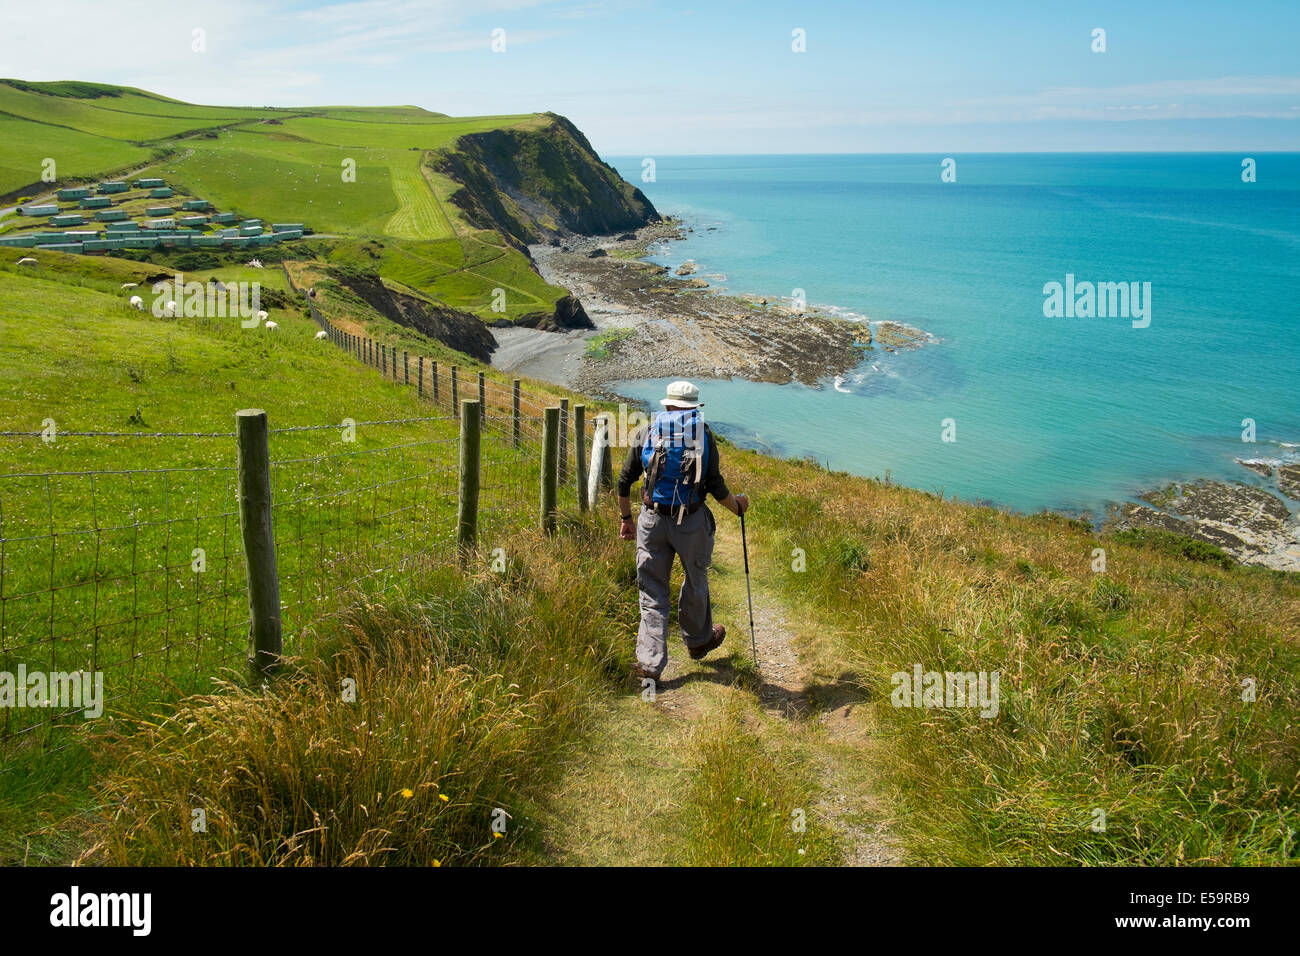 Un homme Walker sur le chemin à la côte du Pays de Galles Borth Ceredigion Pays de Galles UK Banque D'Images